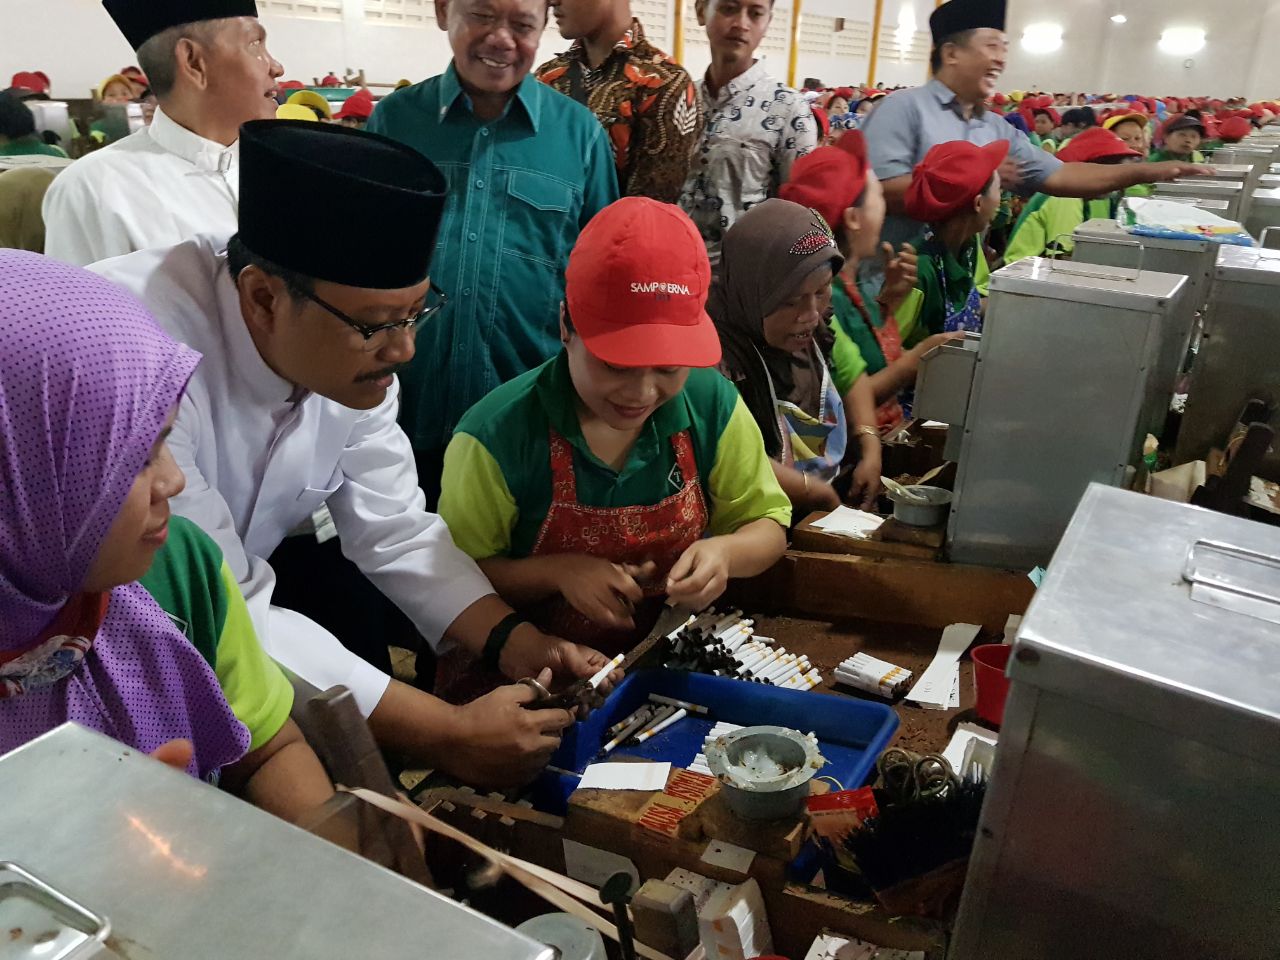 Calon Gubernur Jatim nomor urut 2, Saifullah Yusuf berada di tengah para buruh rokok di Malang. (Foto : Istimewa)